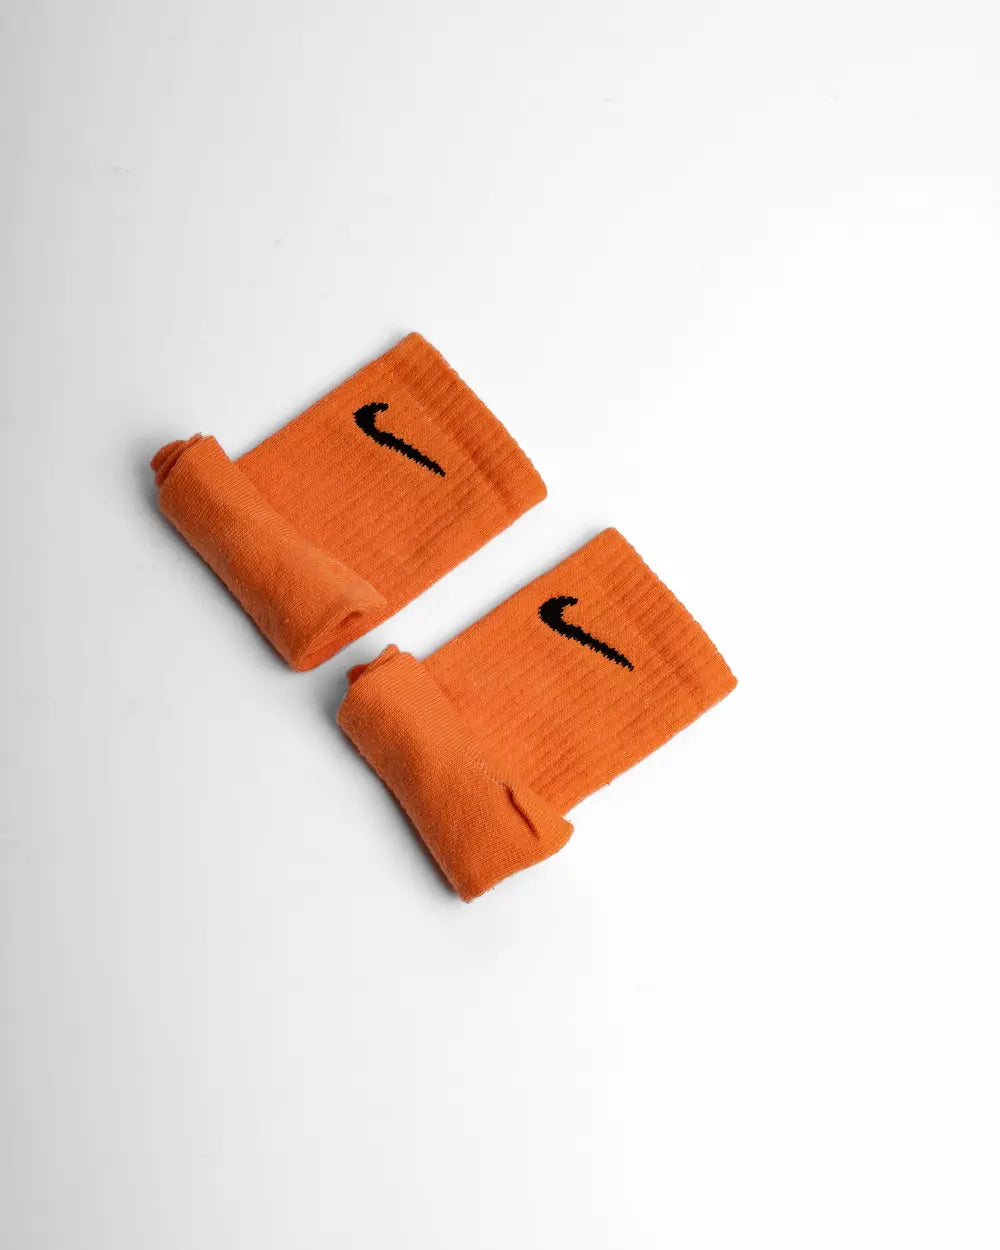 Calzini nike colorati con tecnica di tintura, tonalità arancione